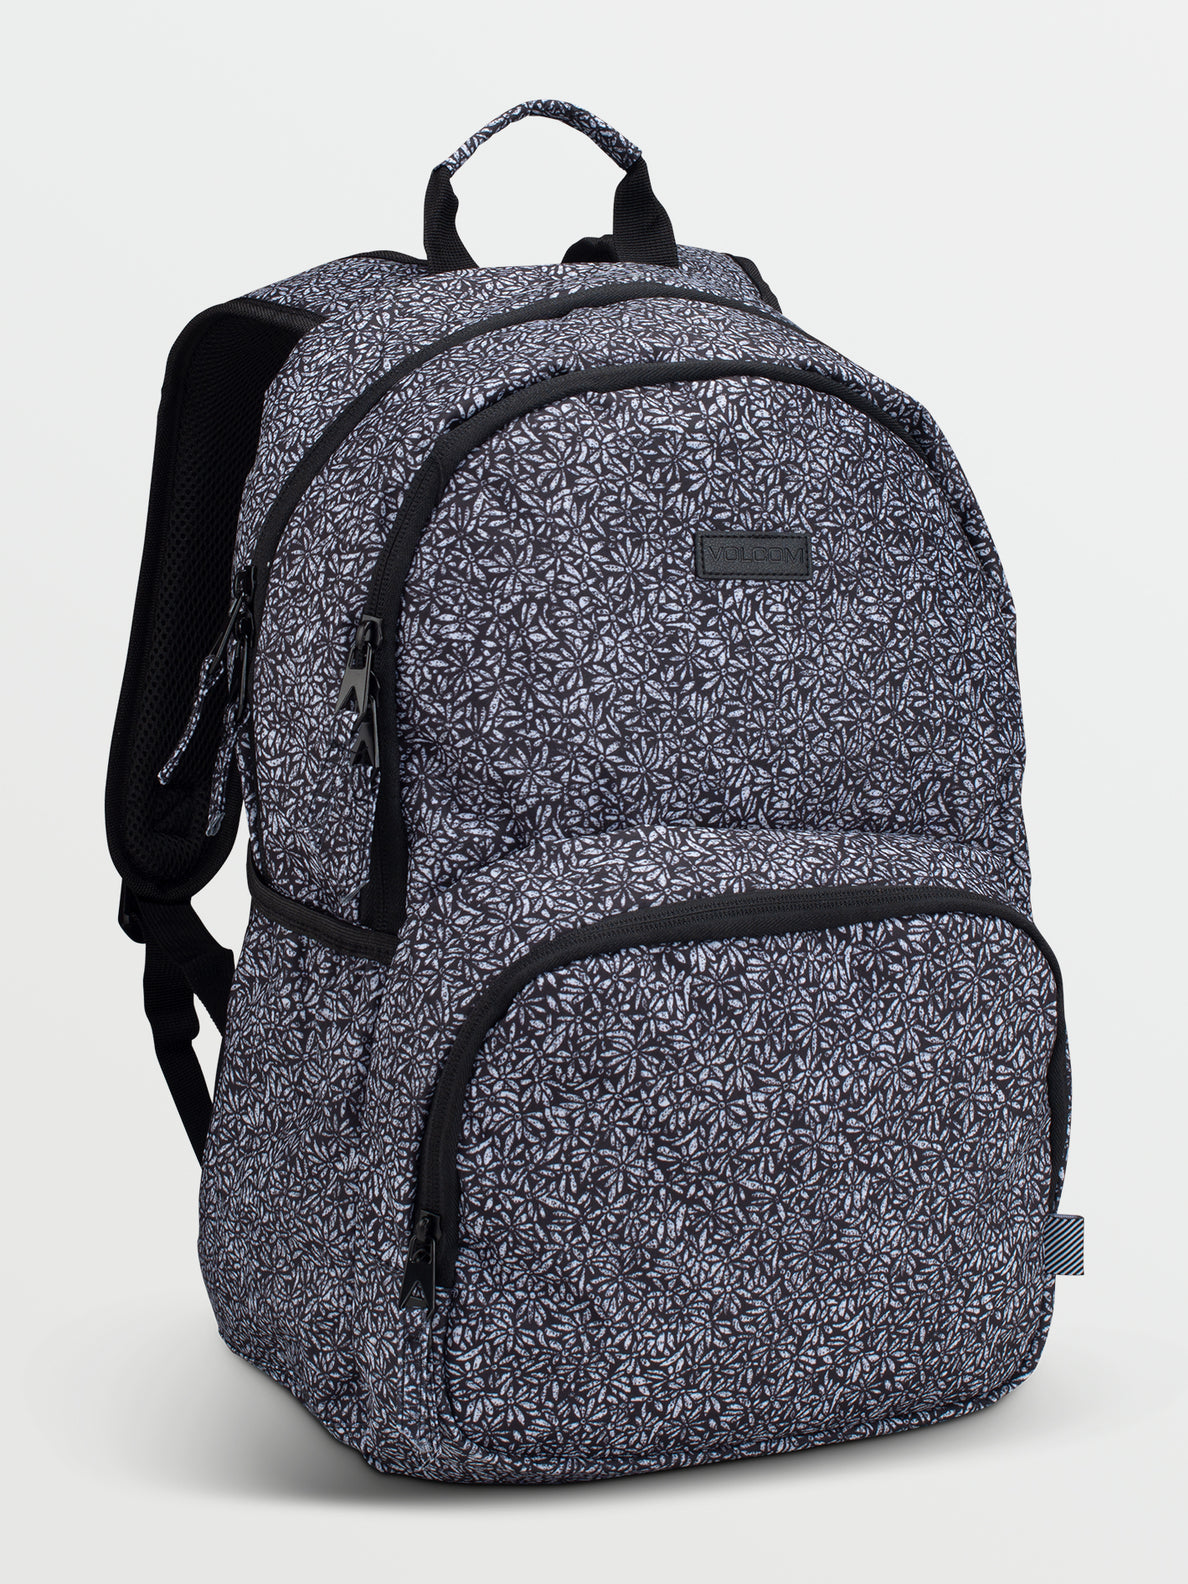 Upperclass Backpack - Black/White